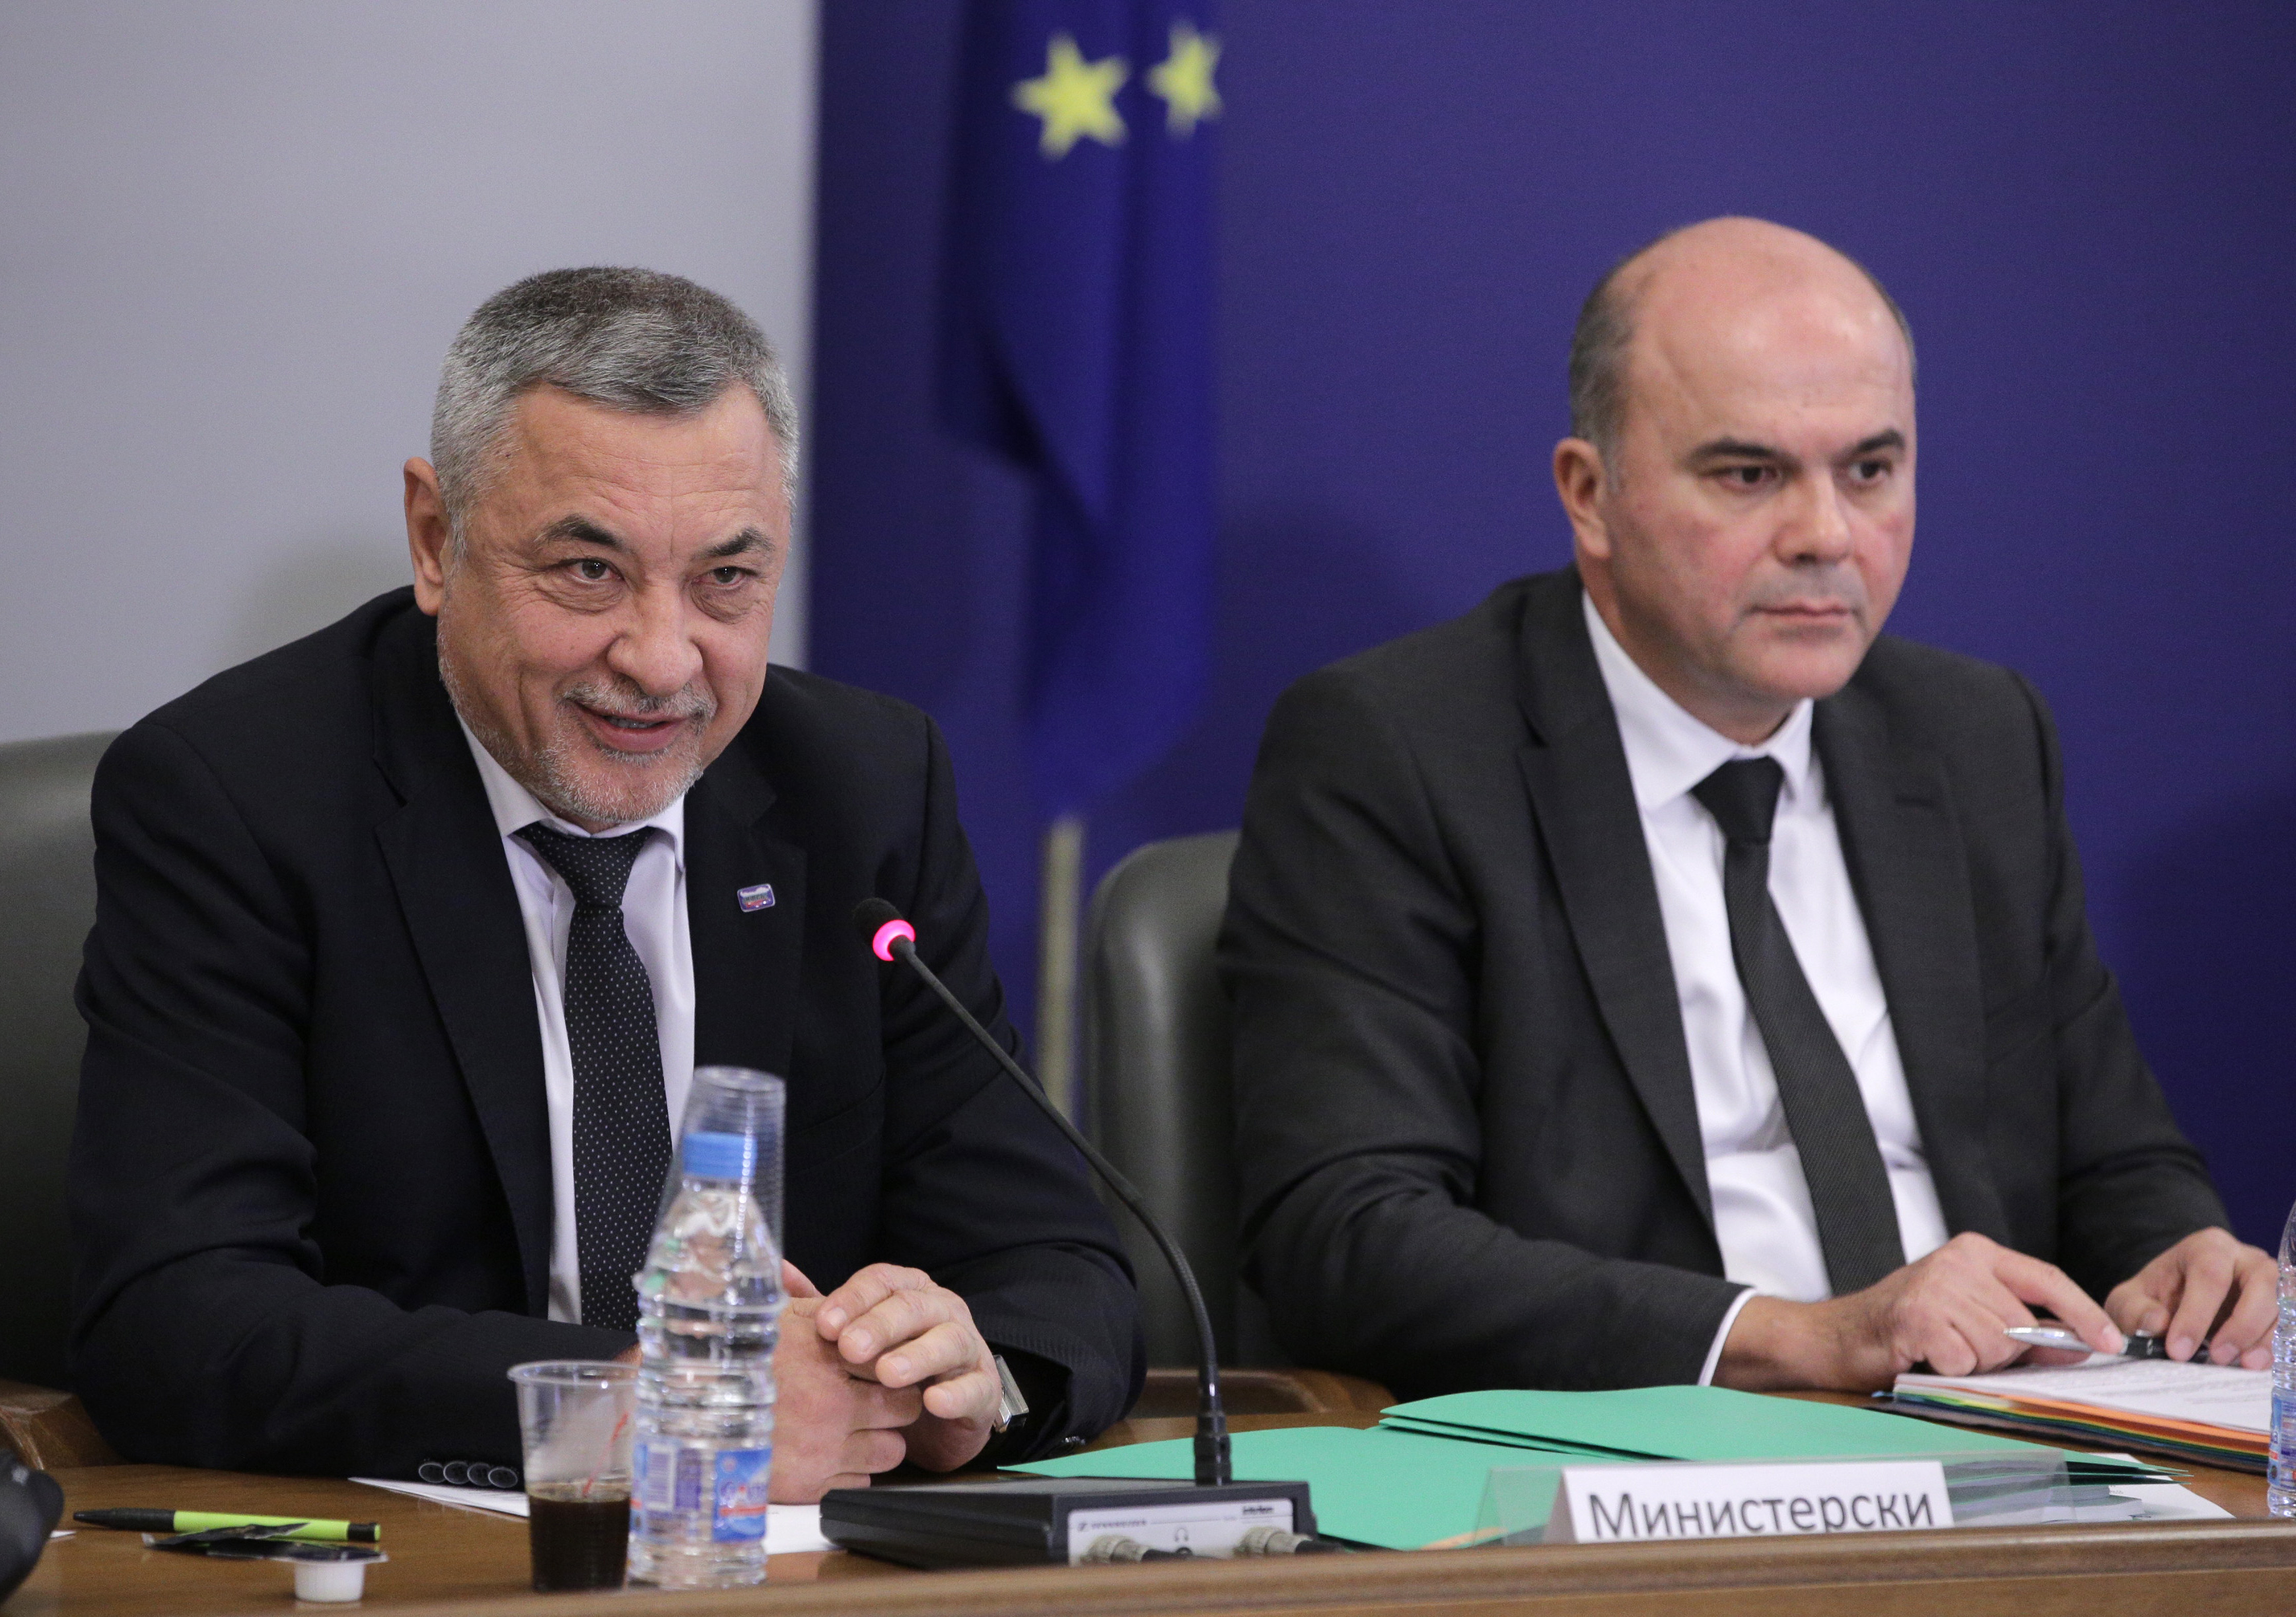 Бисер Петков - министър на труда и социалната политика обясни как ще става пенсионирането от догодина